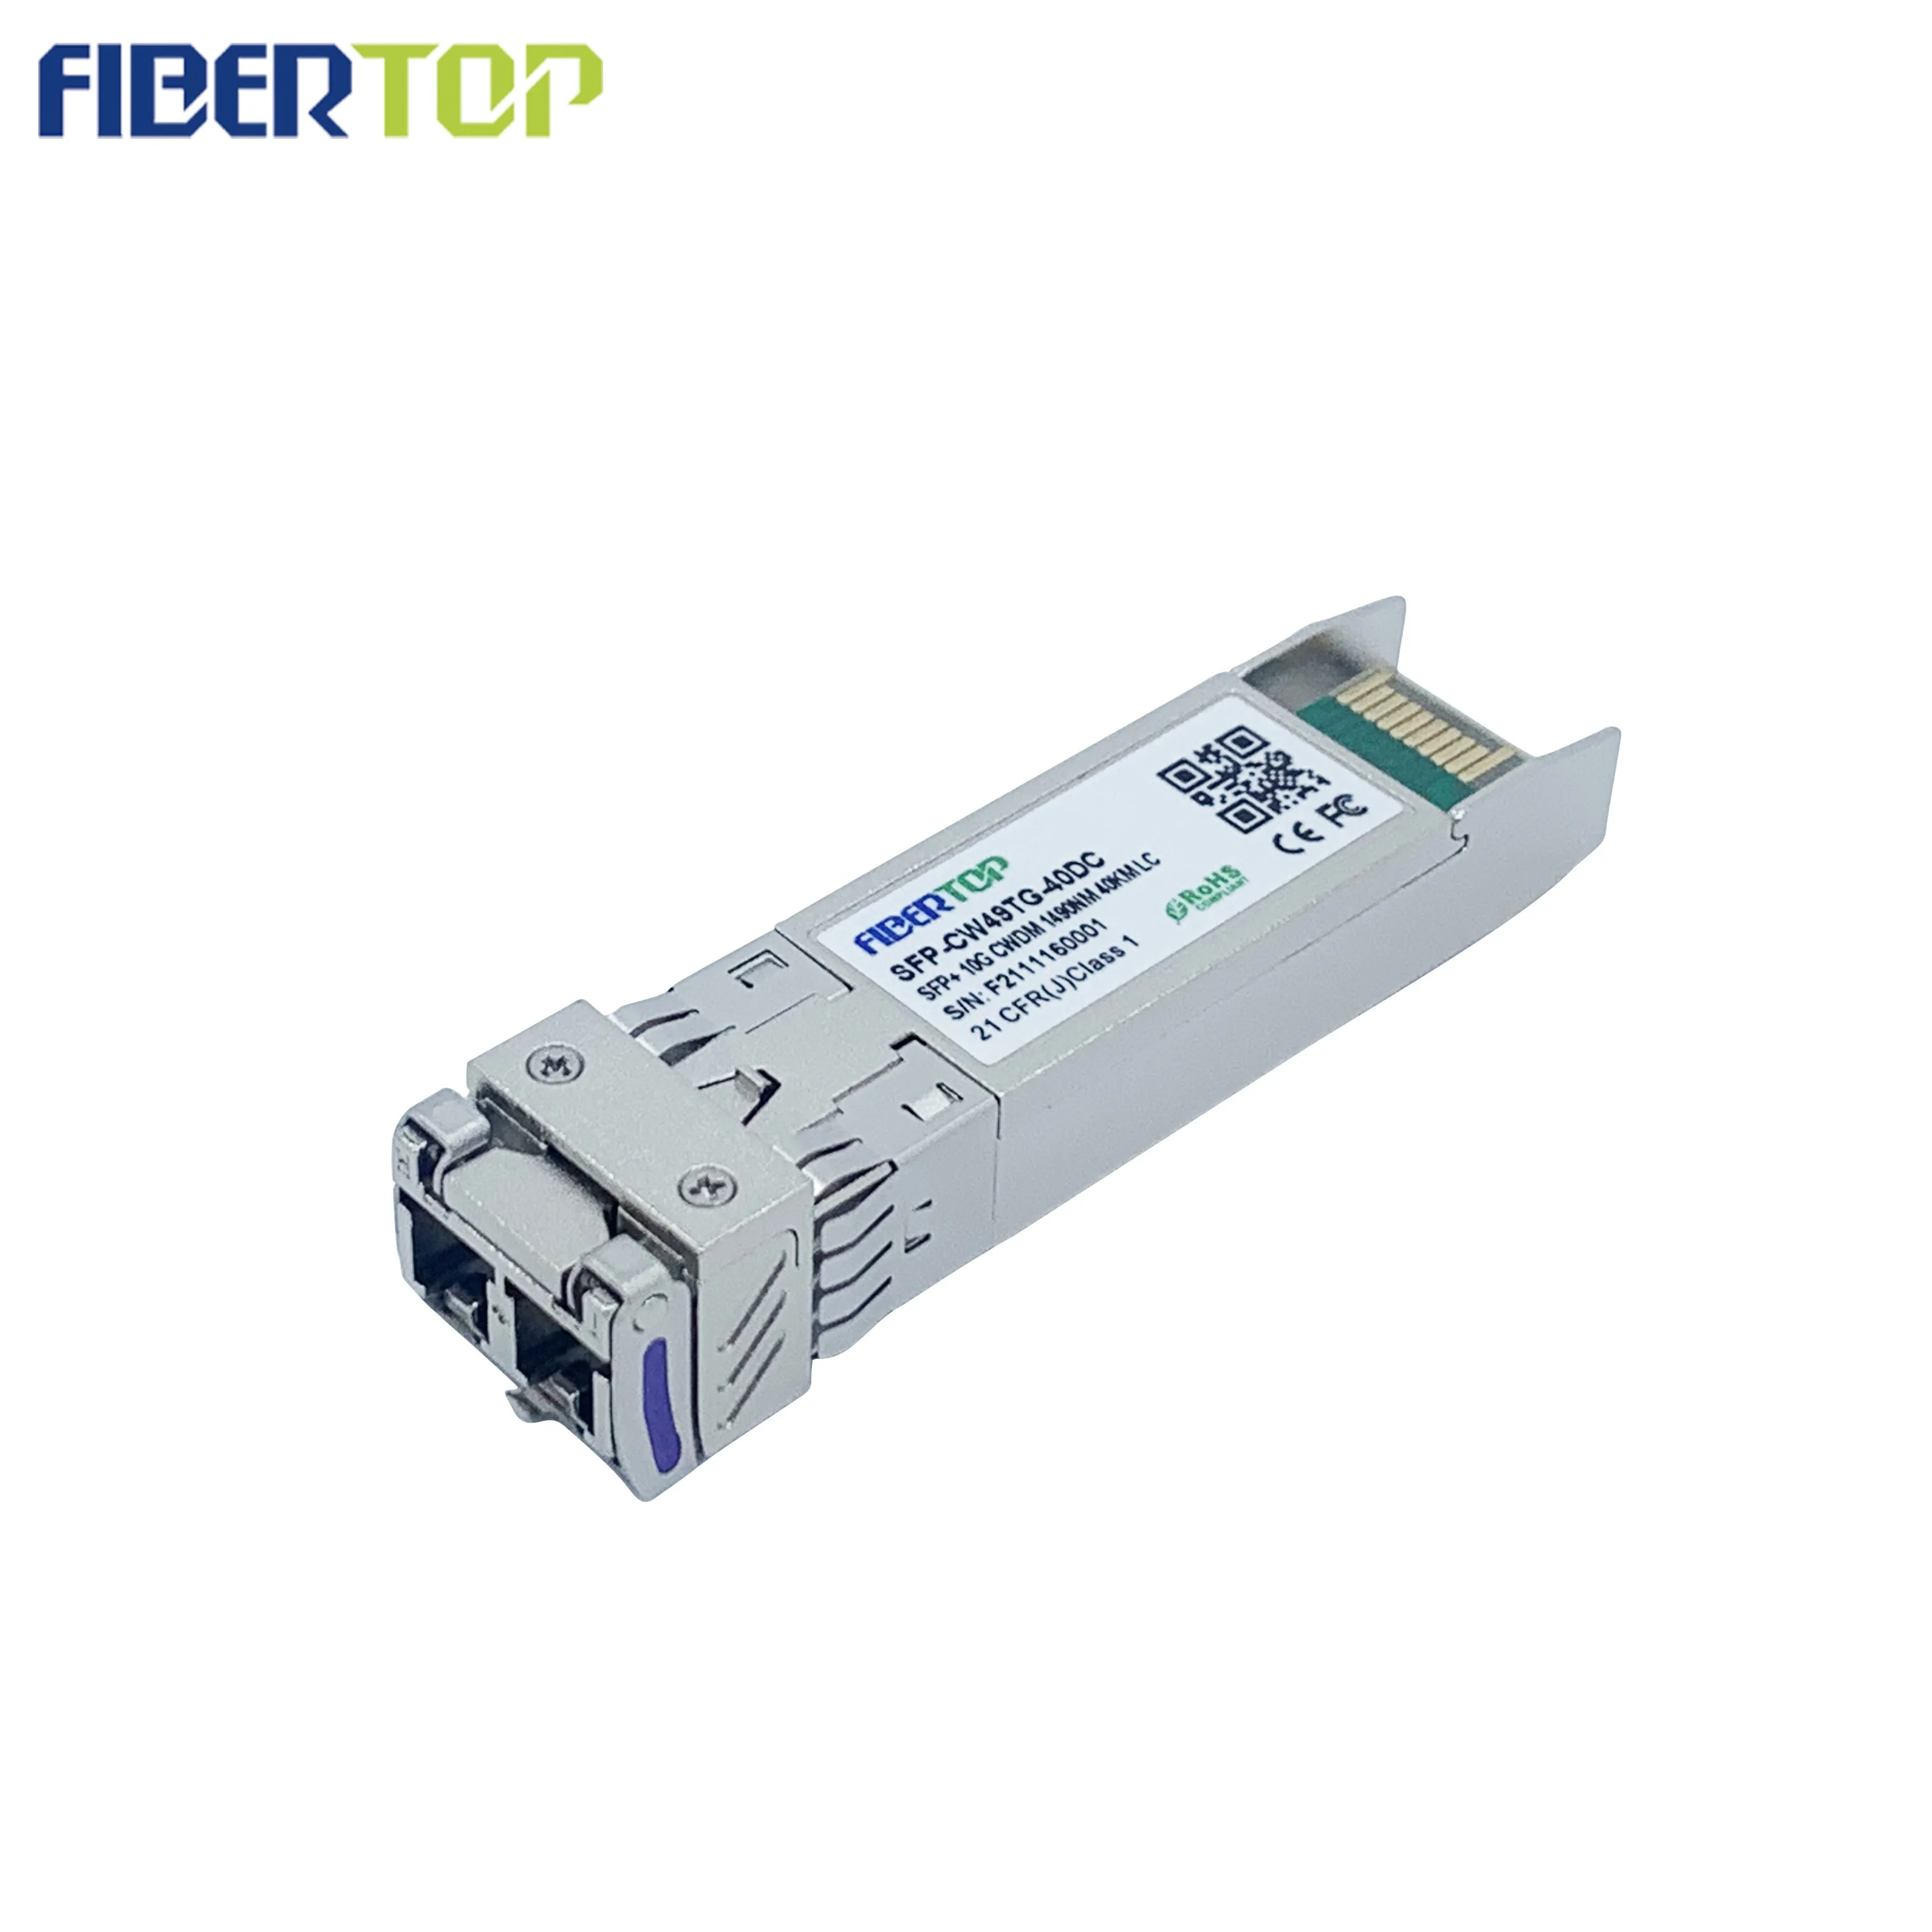 FİBERTOP 10g cwdm sfp + optik modül en iyi fiber optik internet doğrudan bağlantılı alıcı-verici Görüntü 5